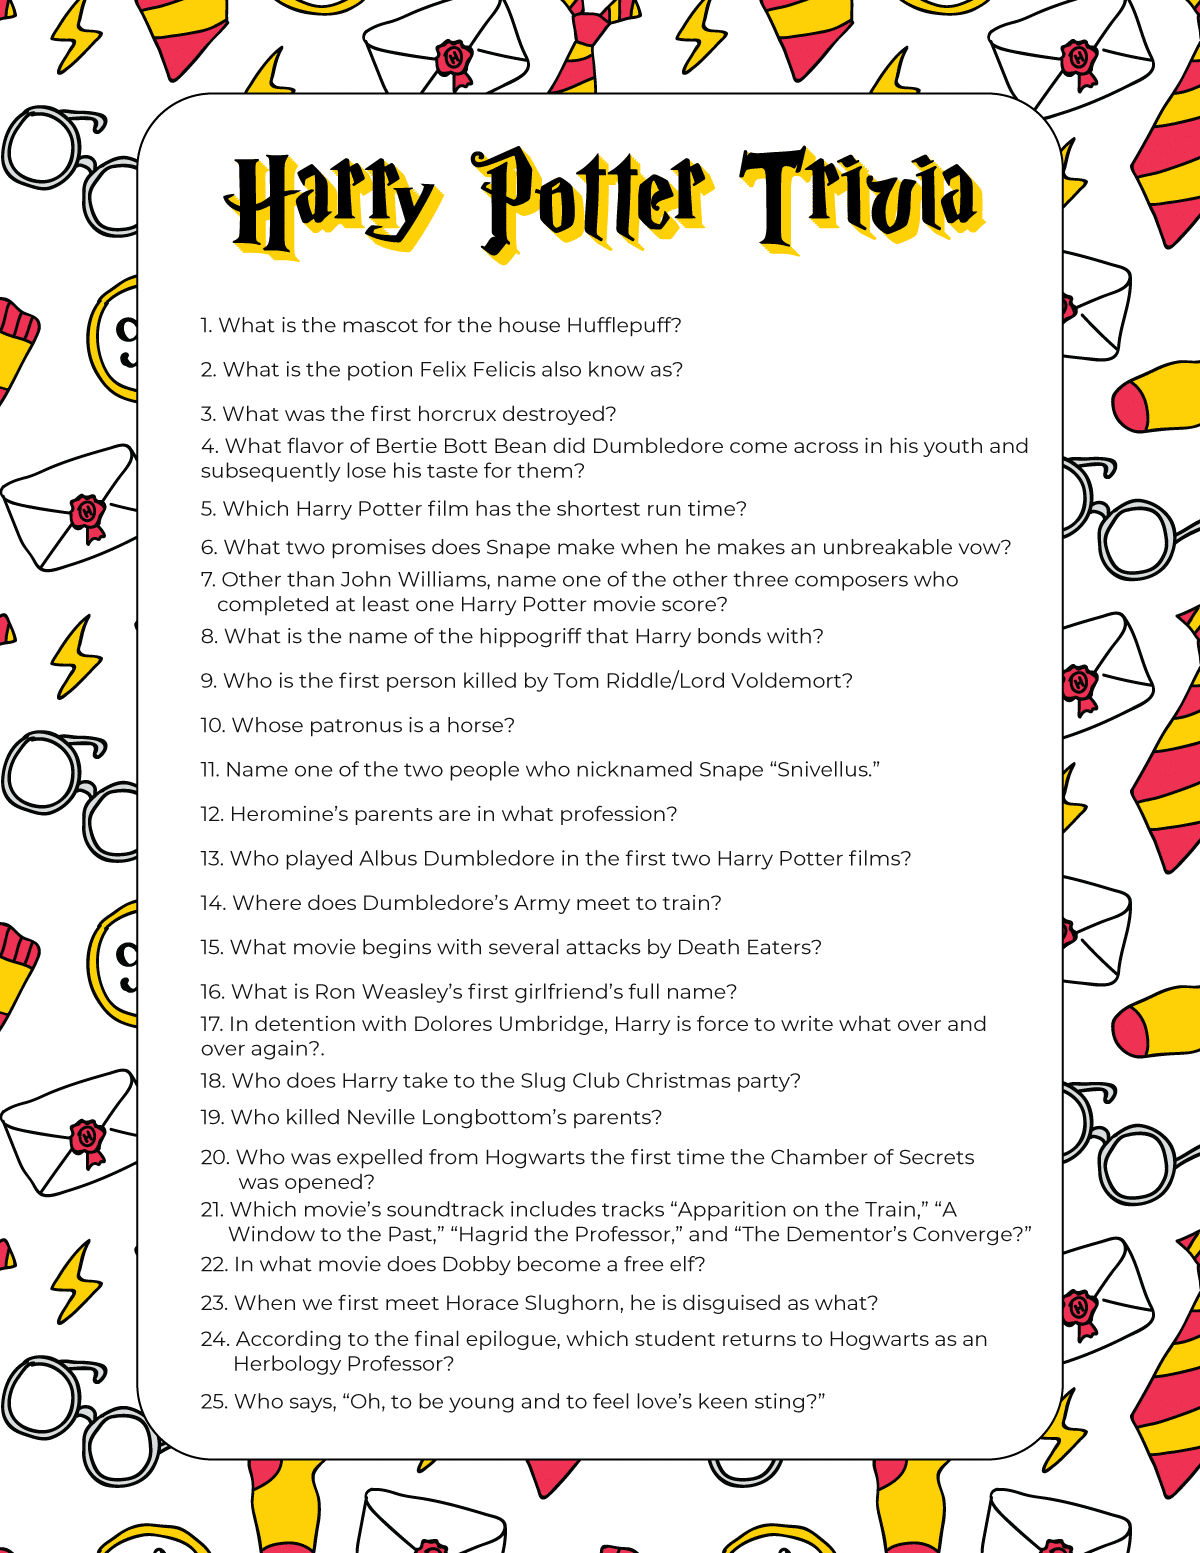 Harry Potter trivia vprašanja na belem ozadju